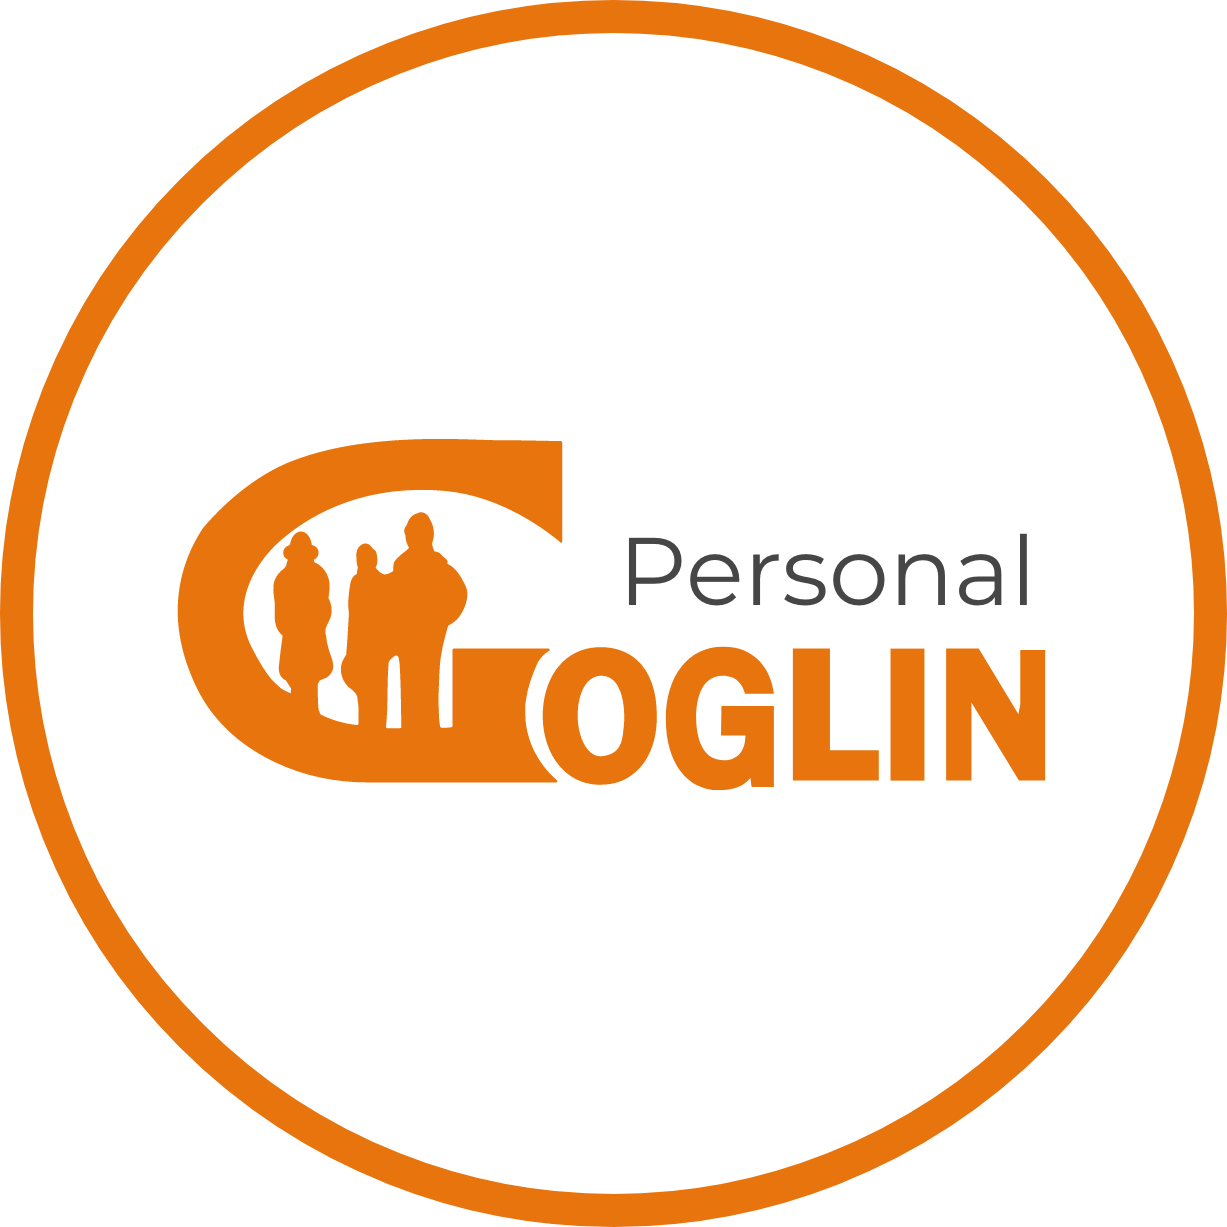 Goglin Personal